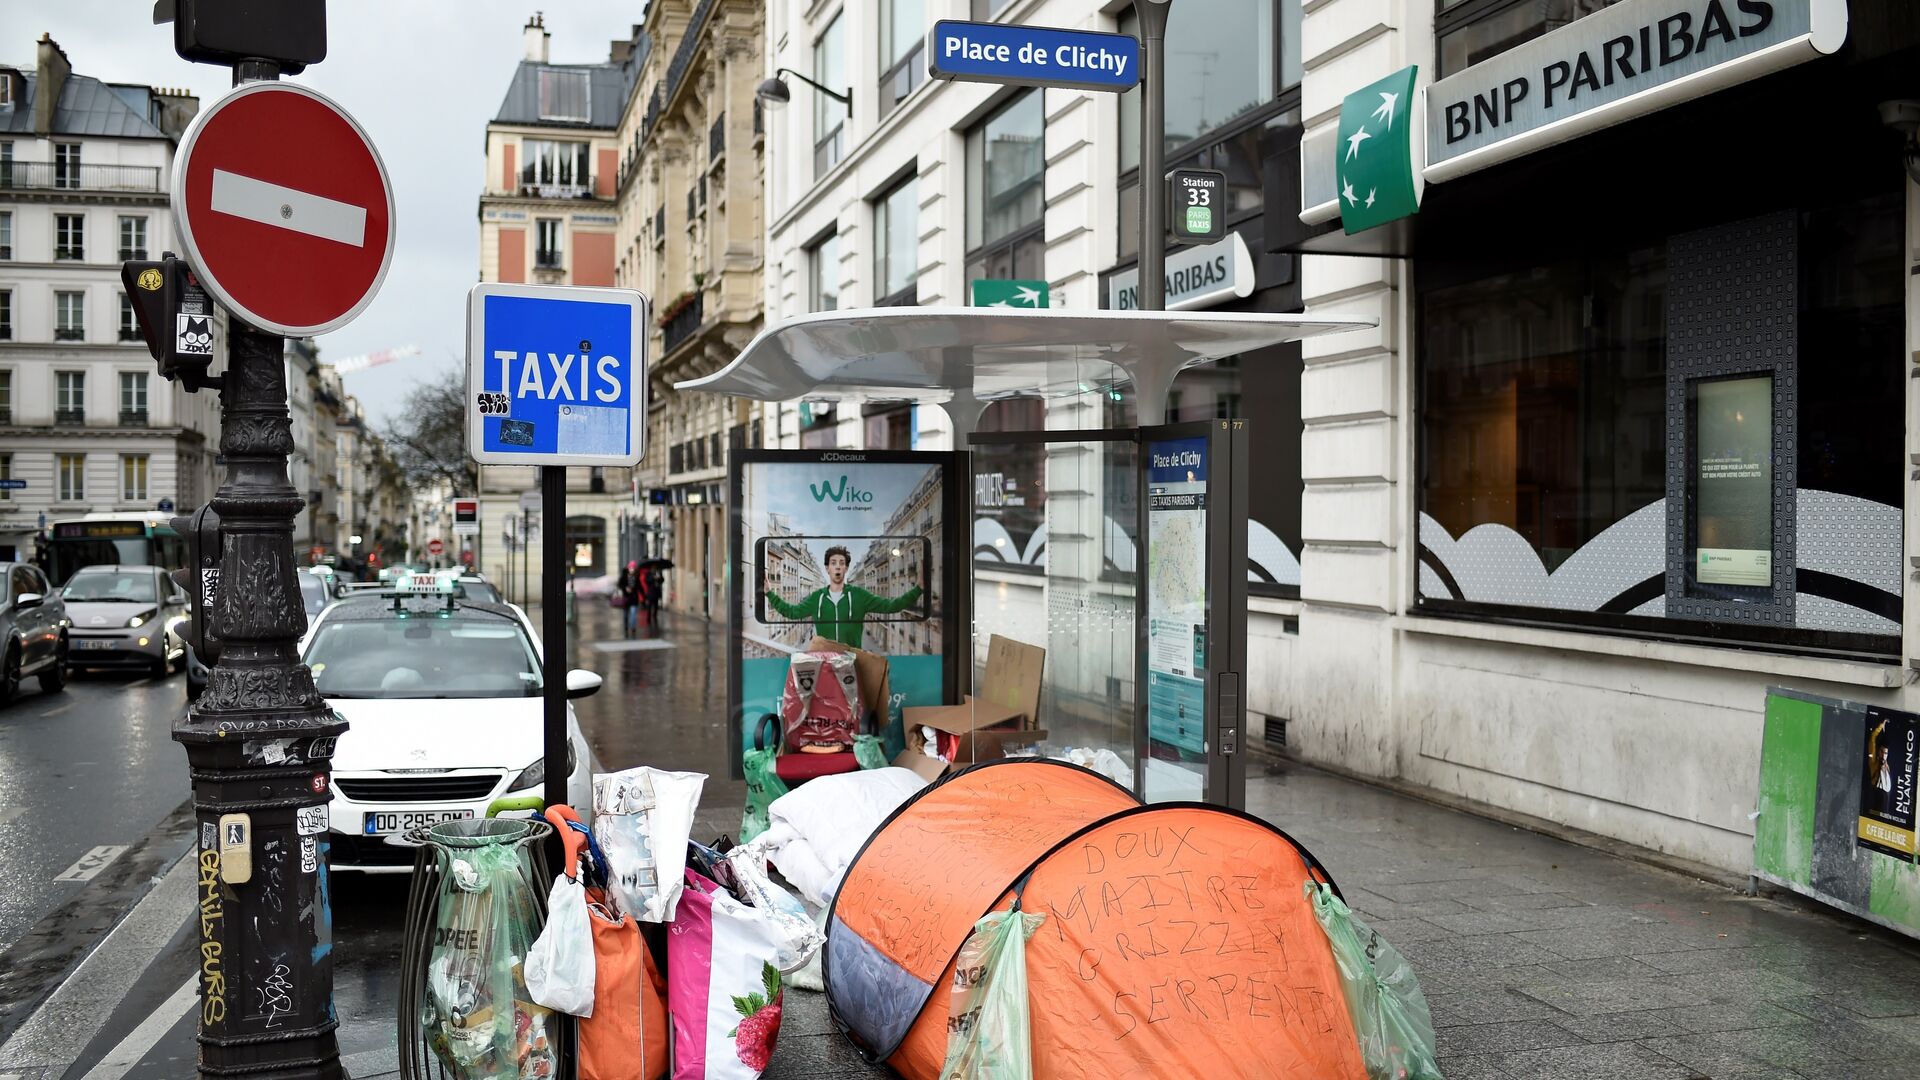 Палатки бездомных во Франции - РИА Новости, 1920, 22.11.2019